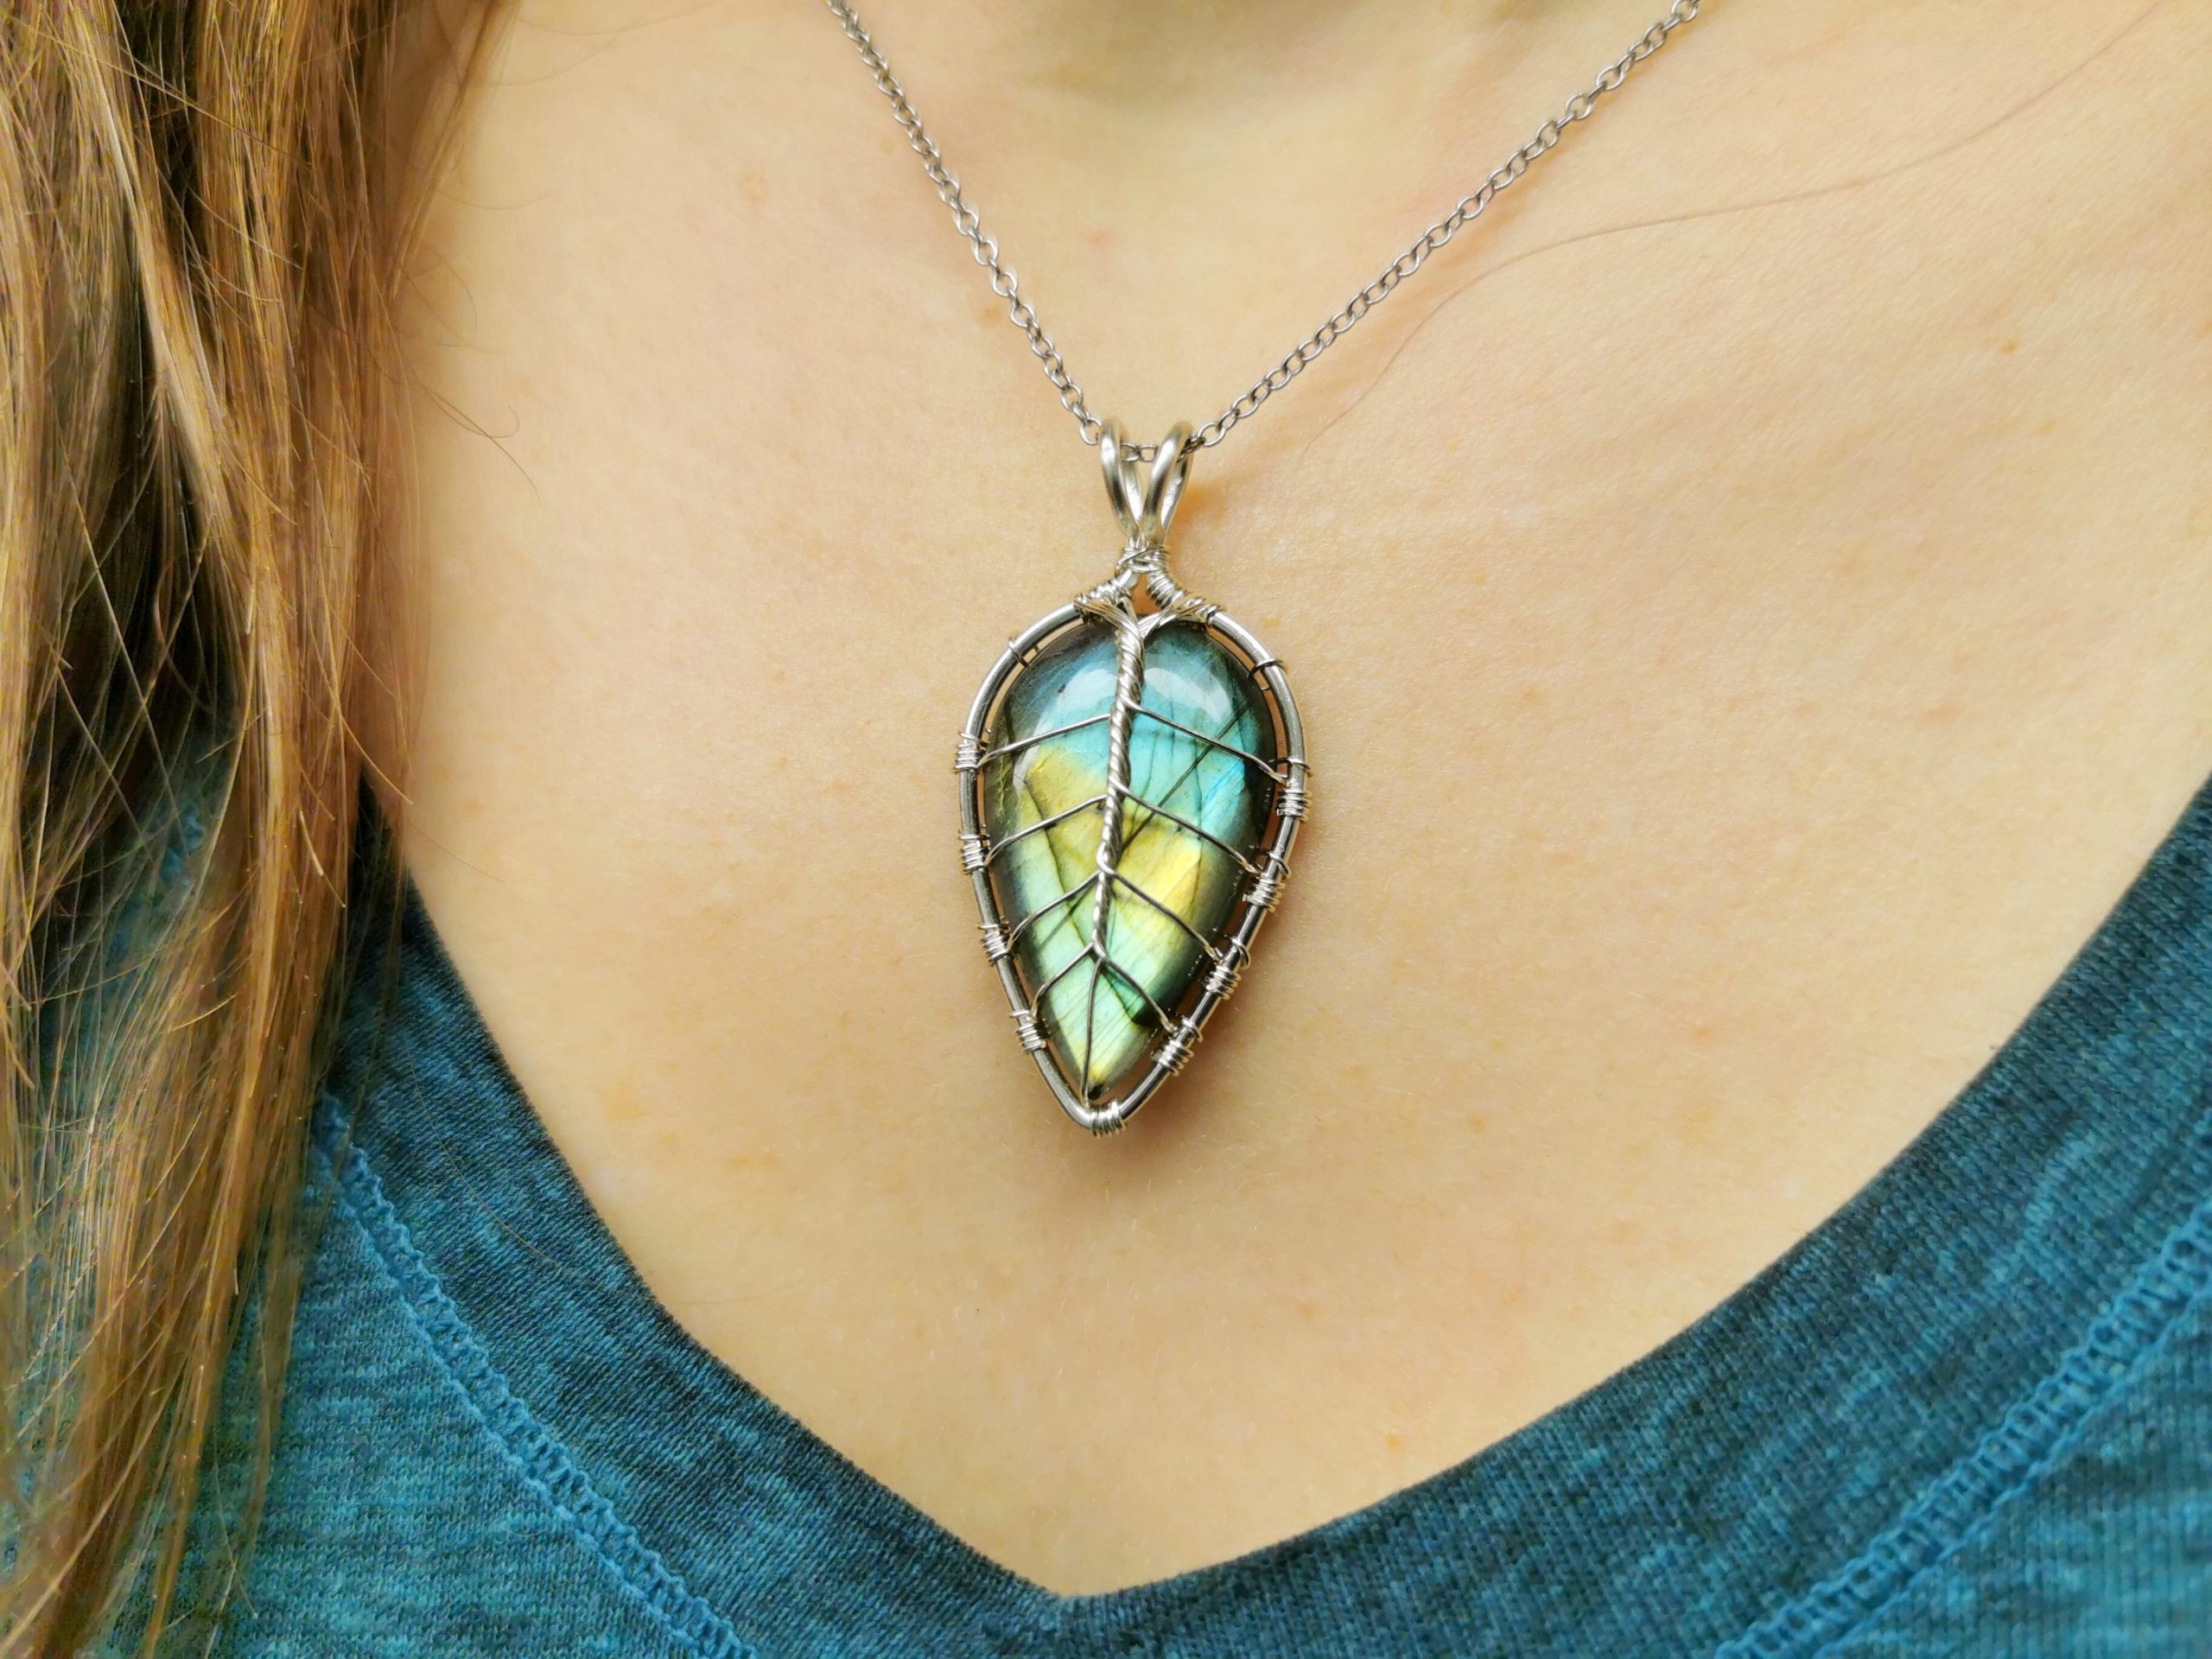 I make leaf pendants with gemstones.